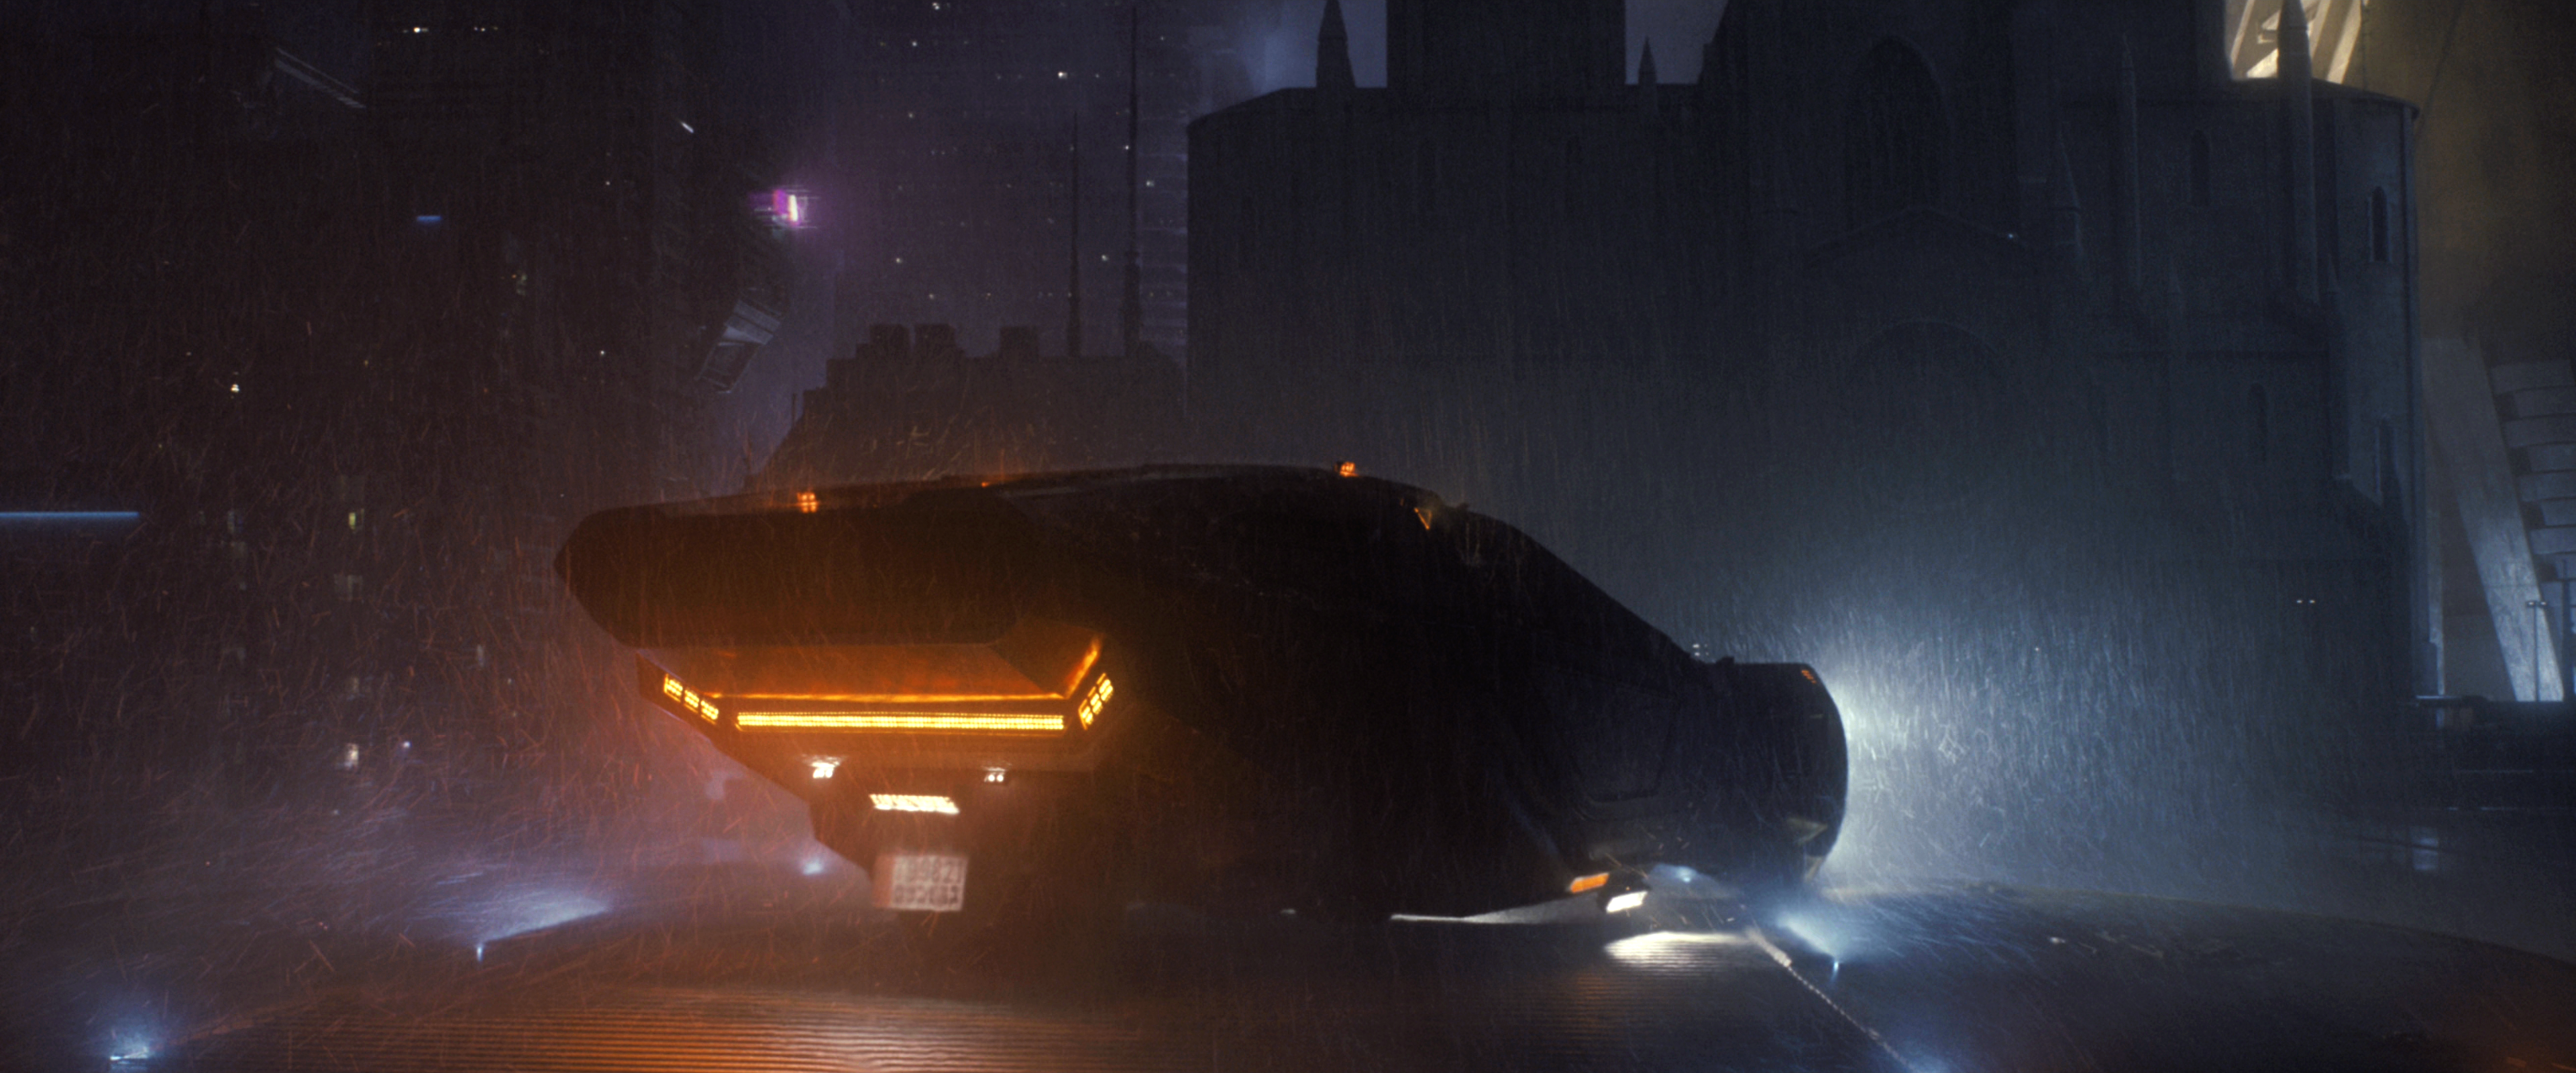 Bladerunner Blade Runner 2049 Cyberpunk Movies Futuristic City Vehicle Rain Dark Night 2017 Year 3840x1600